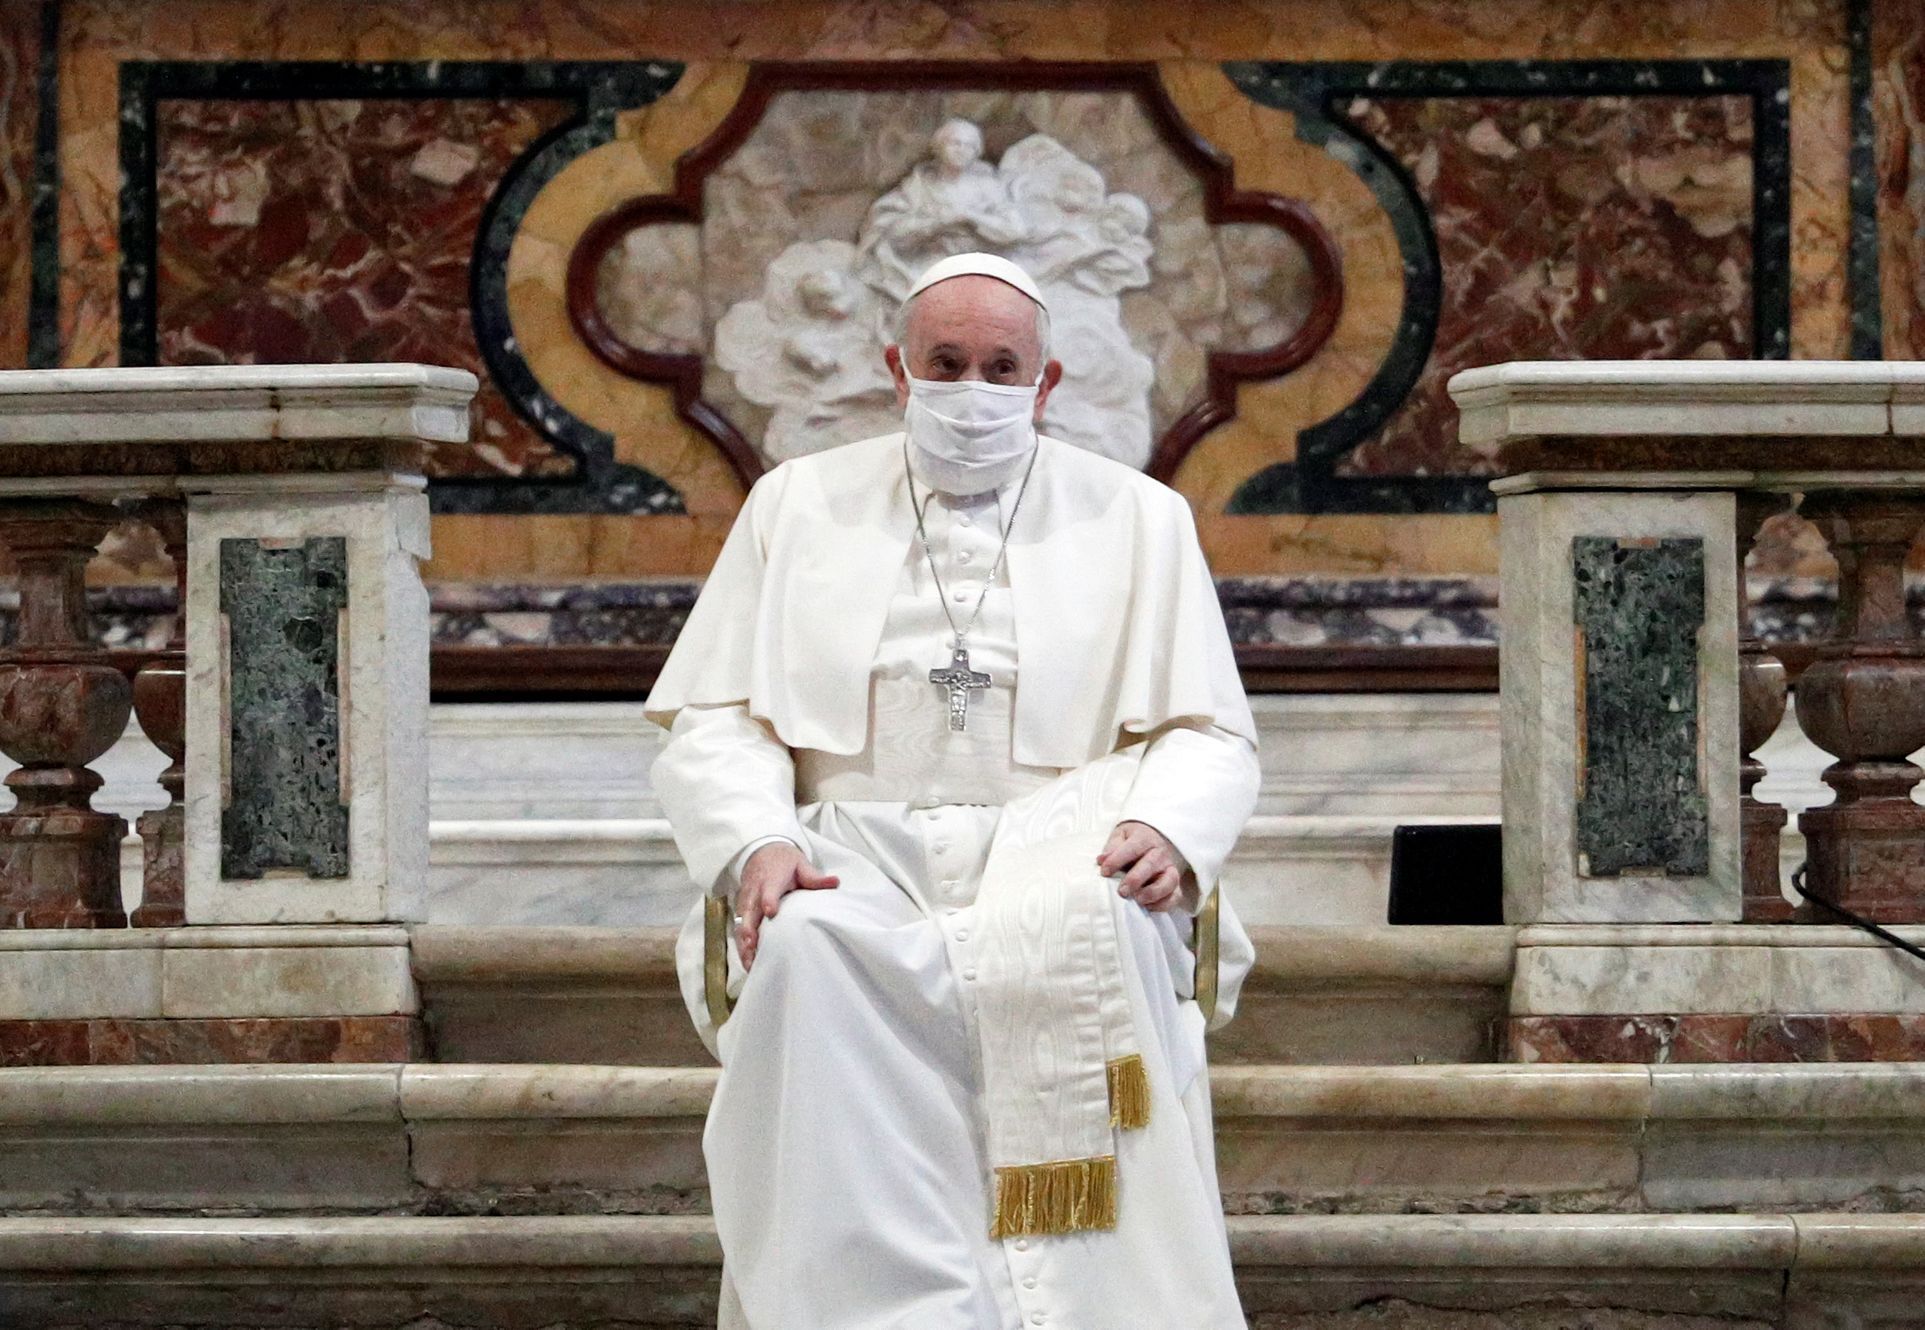 papež v roušce, františek, papež, vatikán, koronavirus